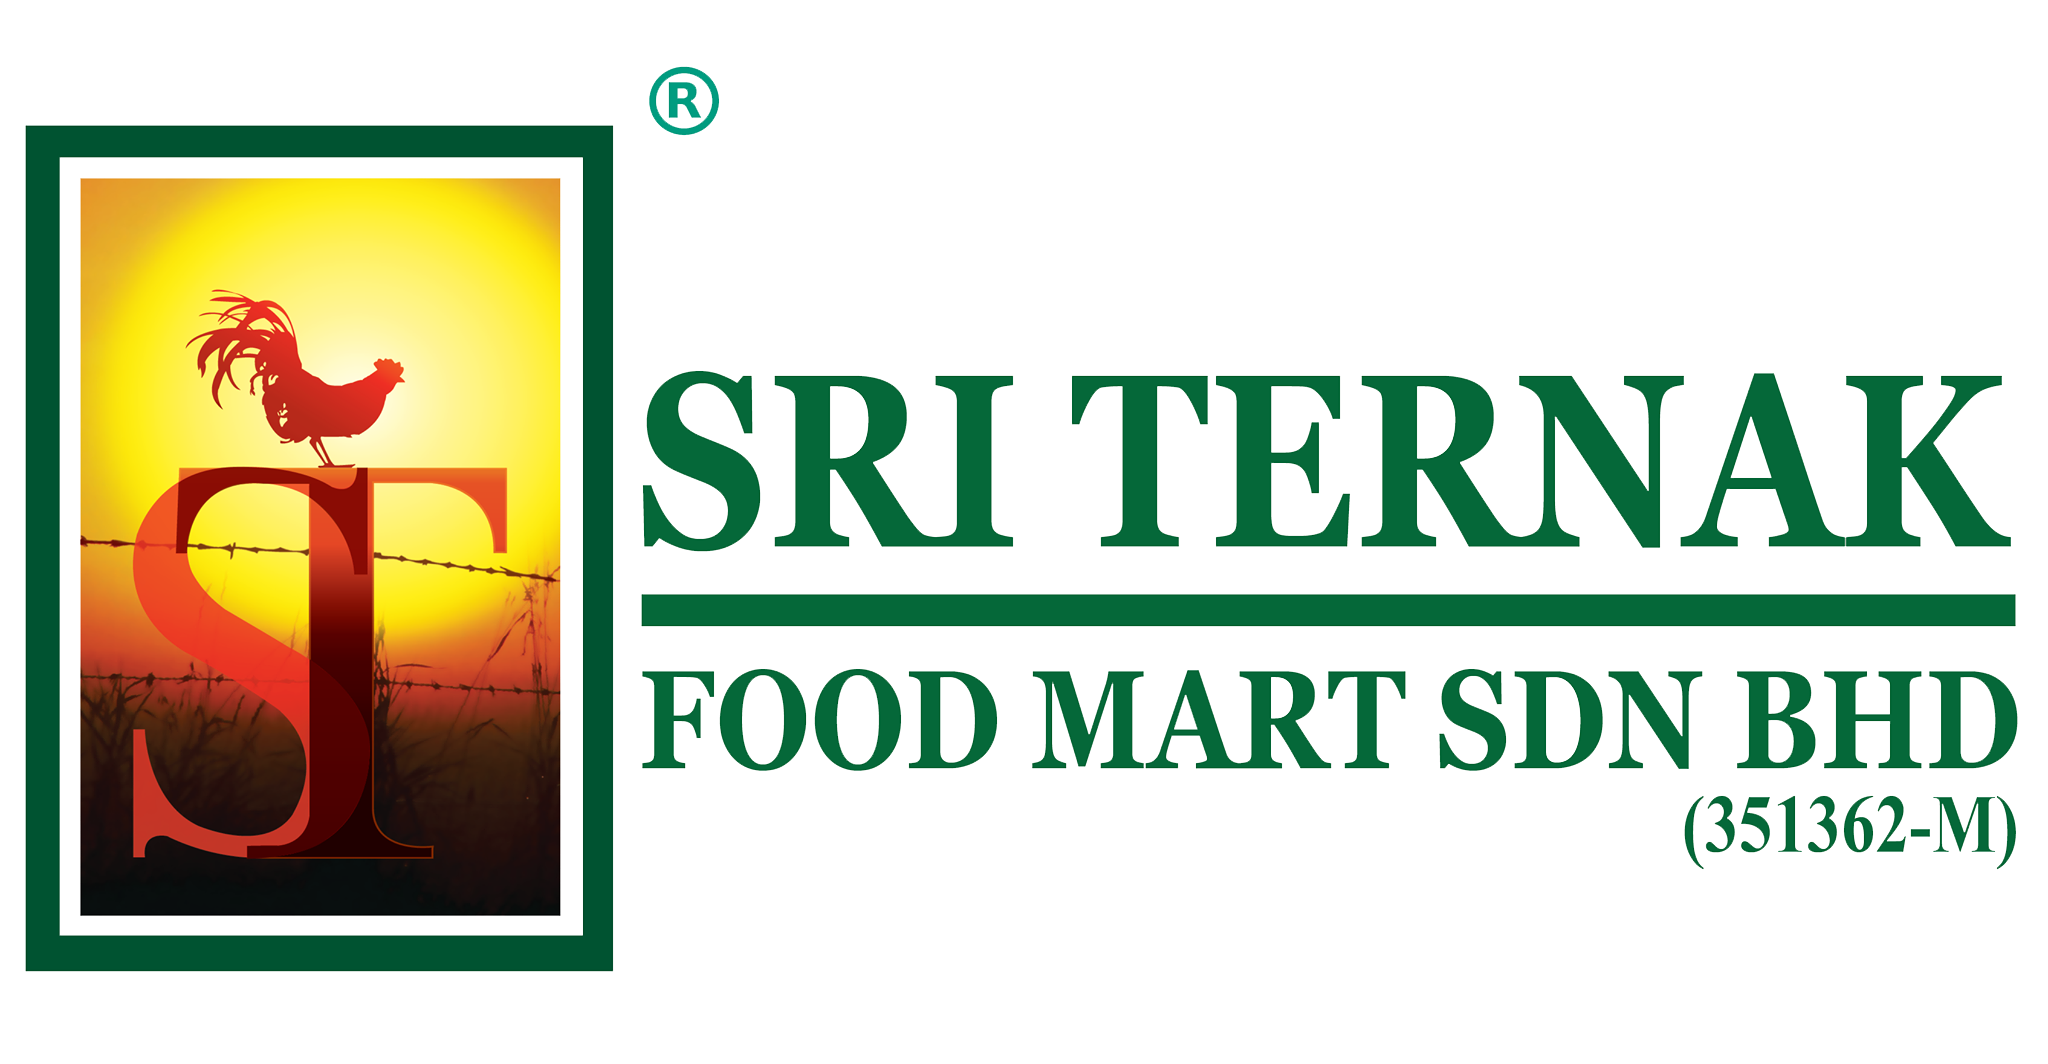 Sri Ternak Food Mart Sdn Bhd